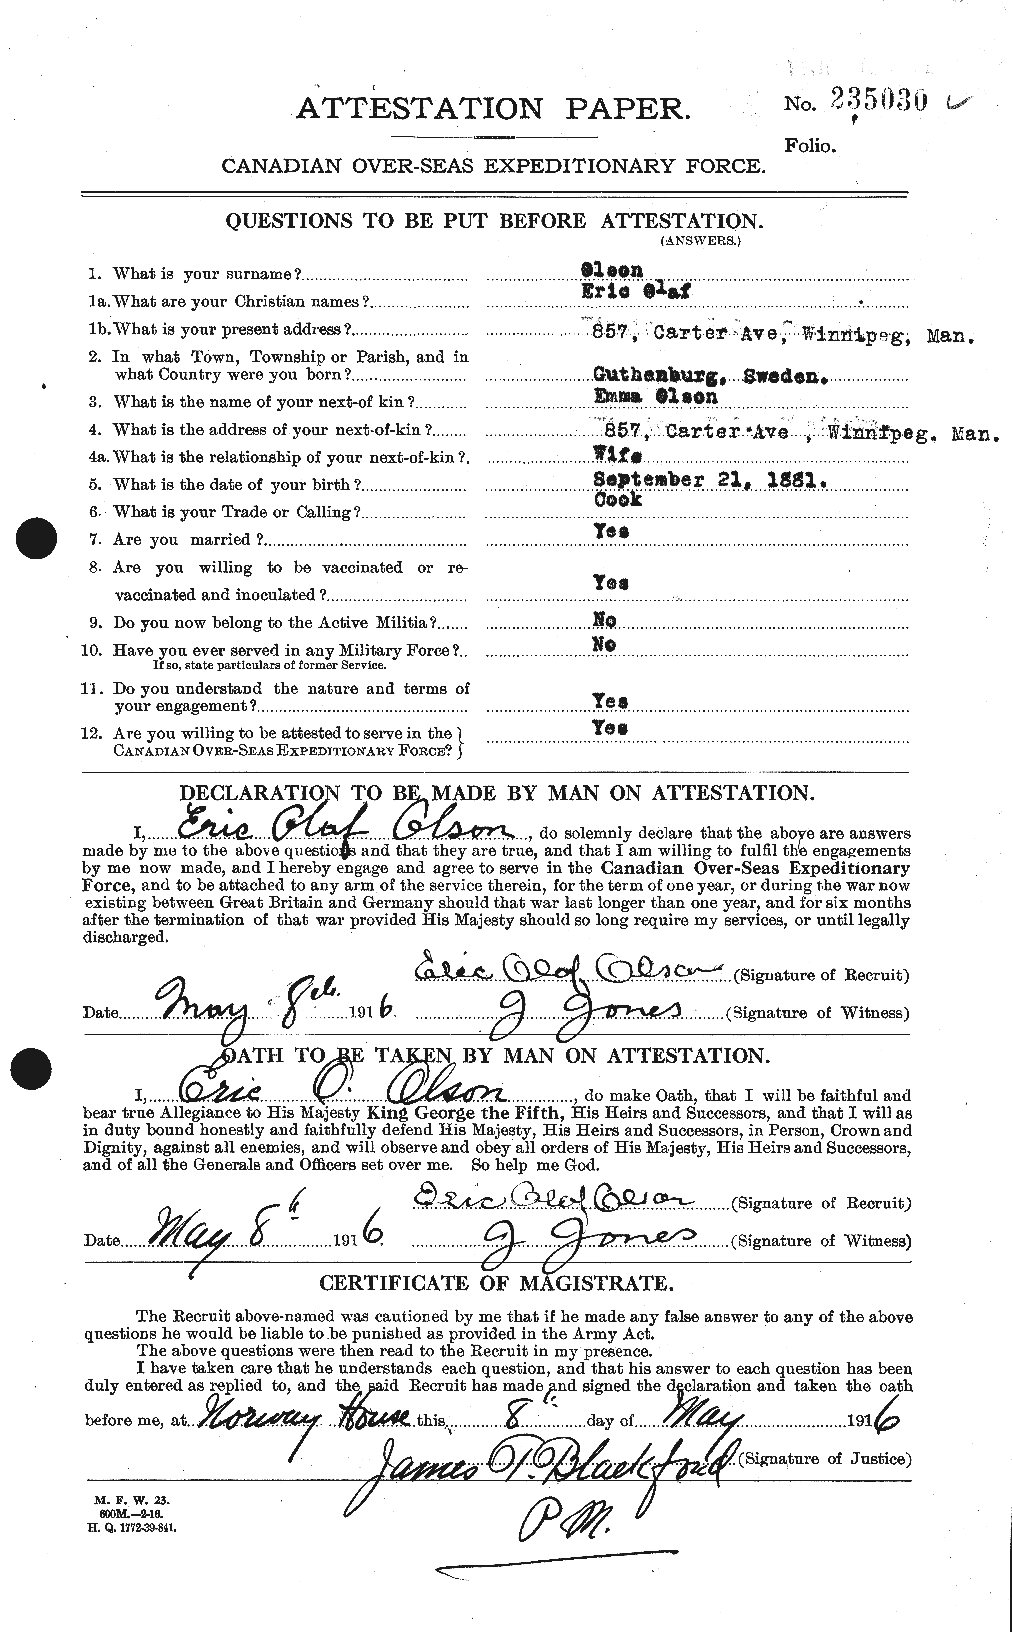 Dossiers du Personnel de la Première Guerre mondiale - CEC 557199a